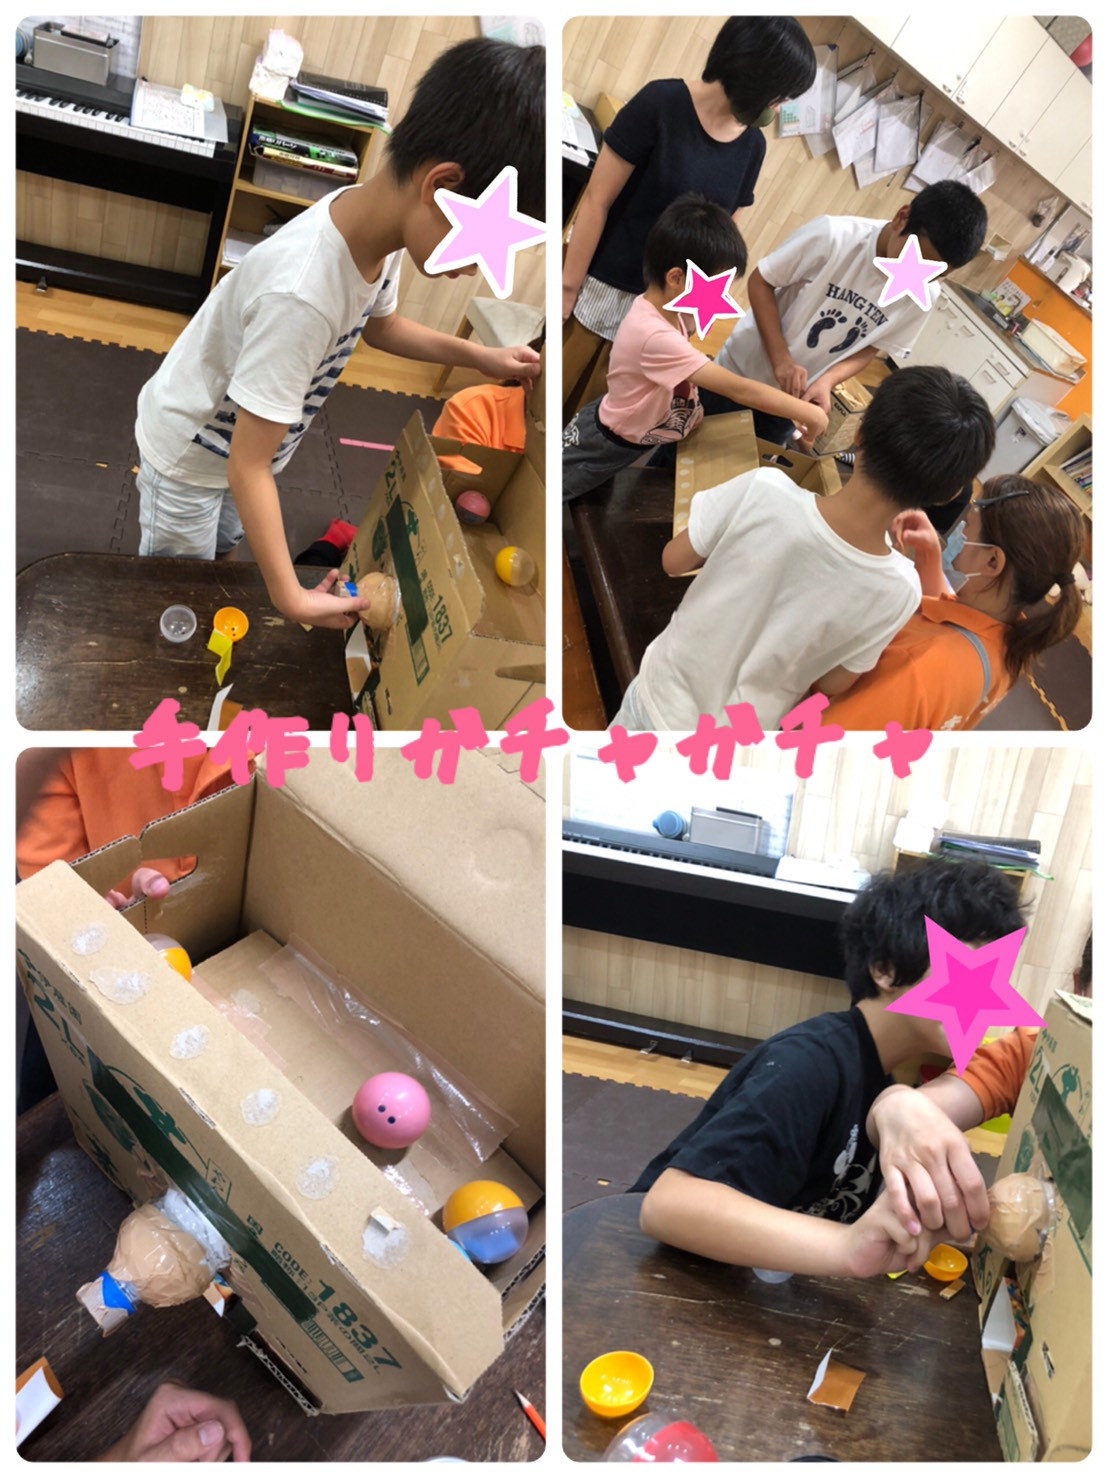 大阪市 放課後等デイサービス きずはなうす 手作りおもちゃ 大阪市内にて放課後等デイサービスで保育 児童指導員業務を行っています